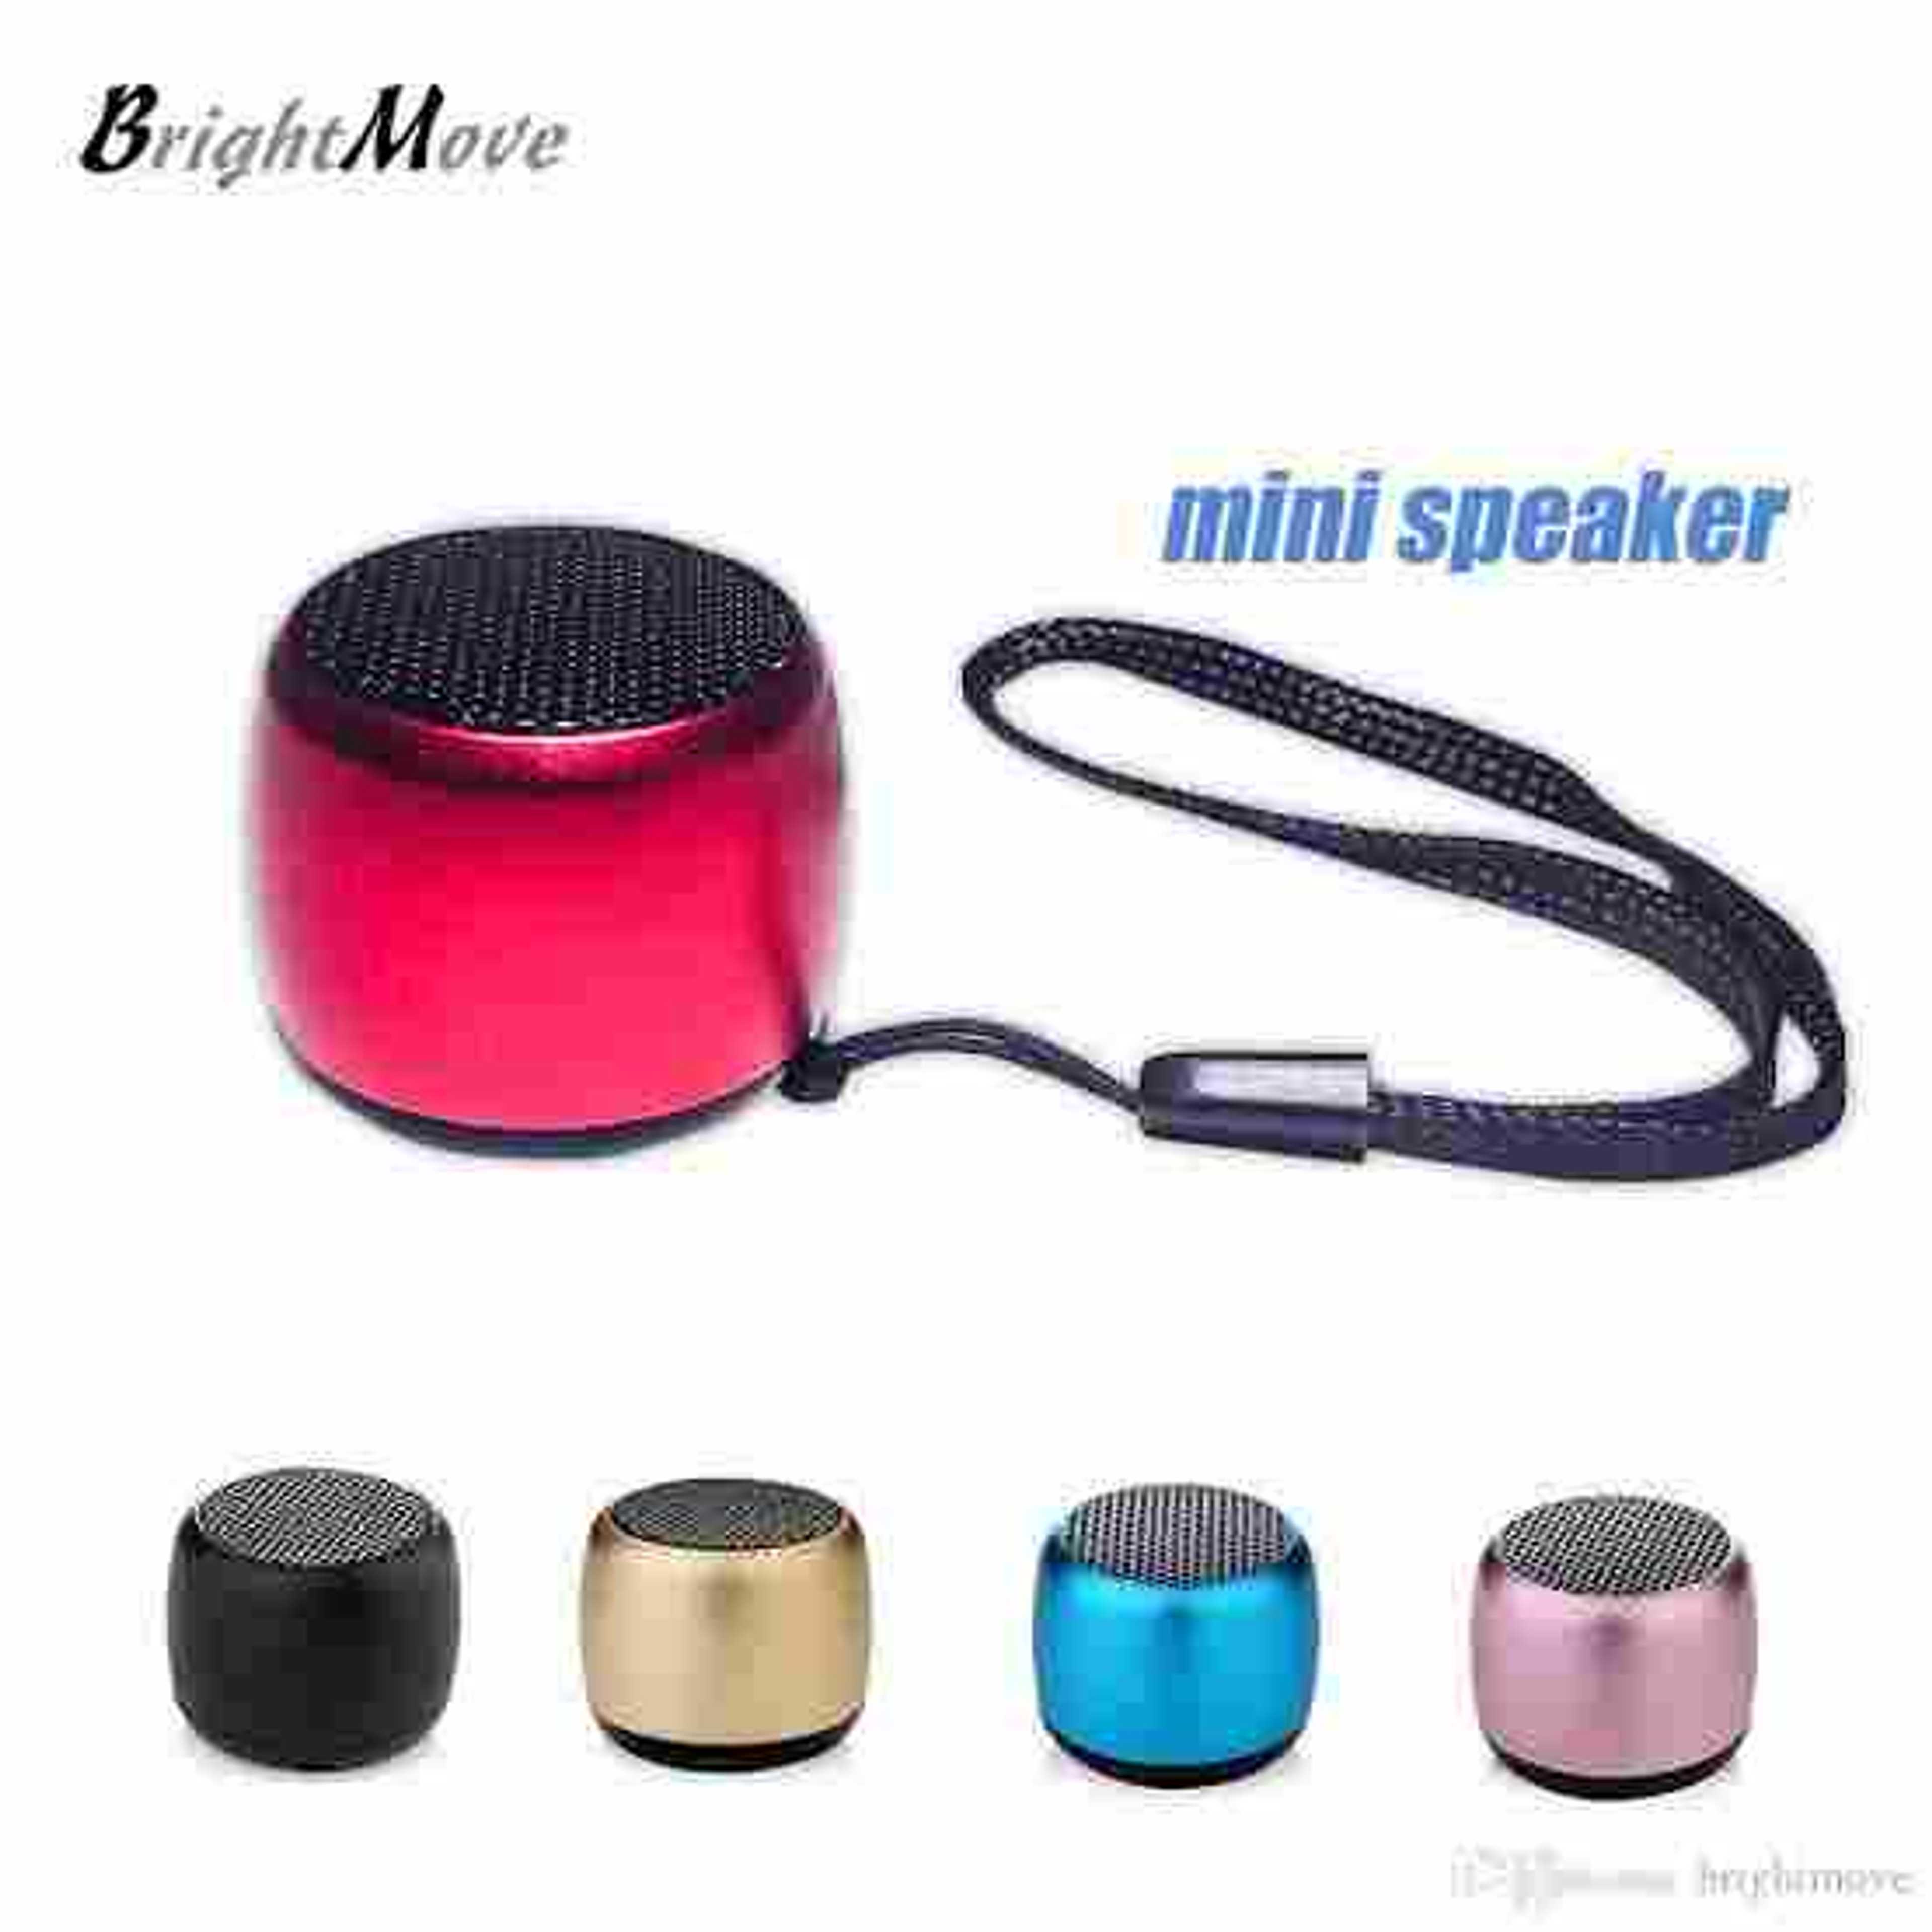 BT mini speaker